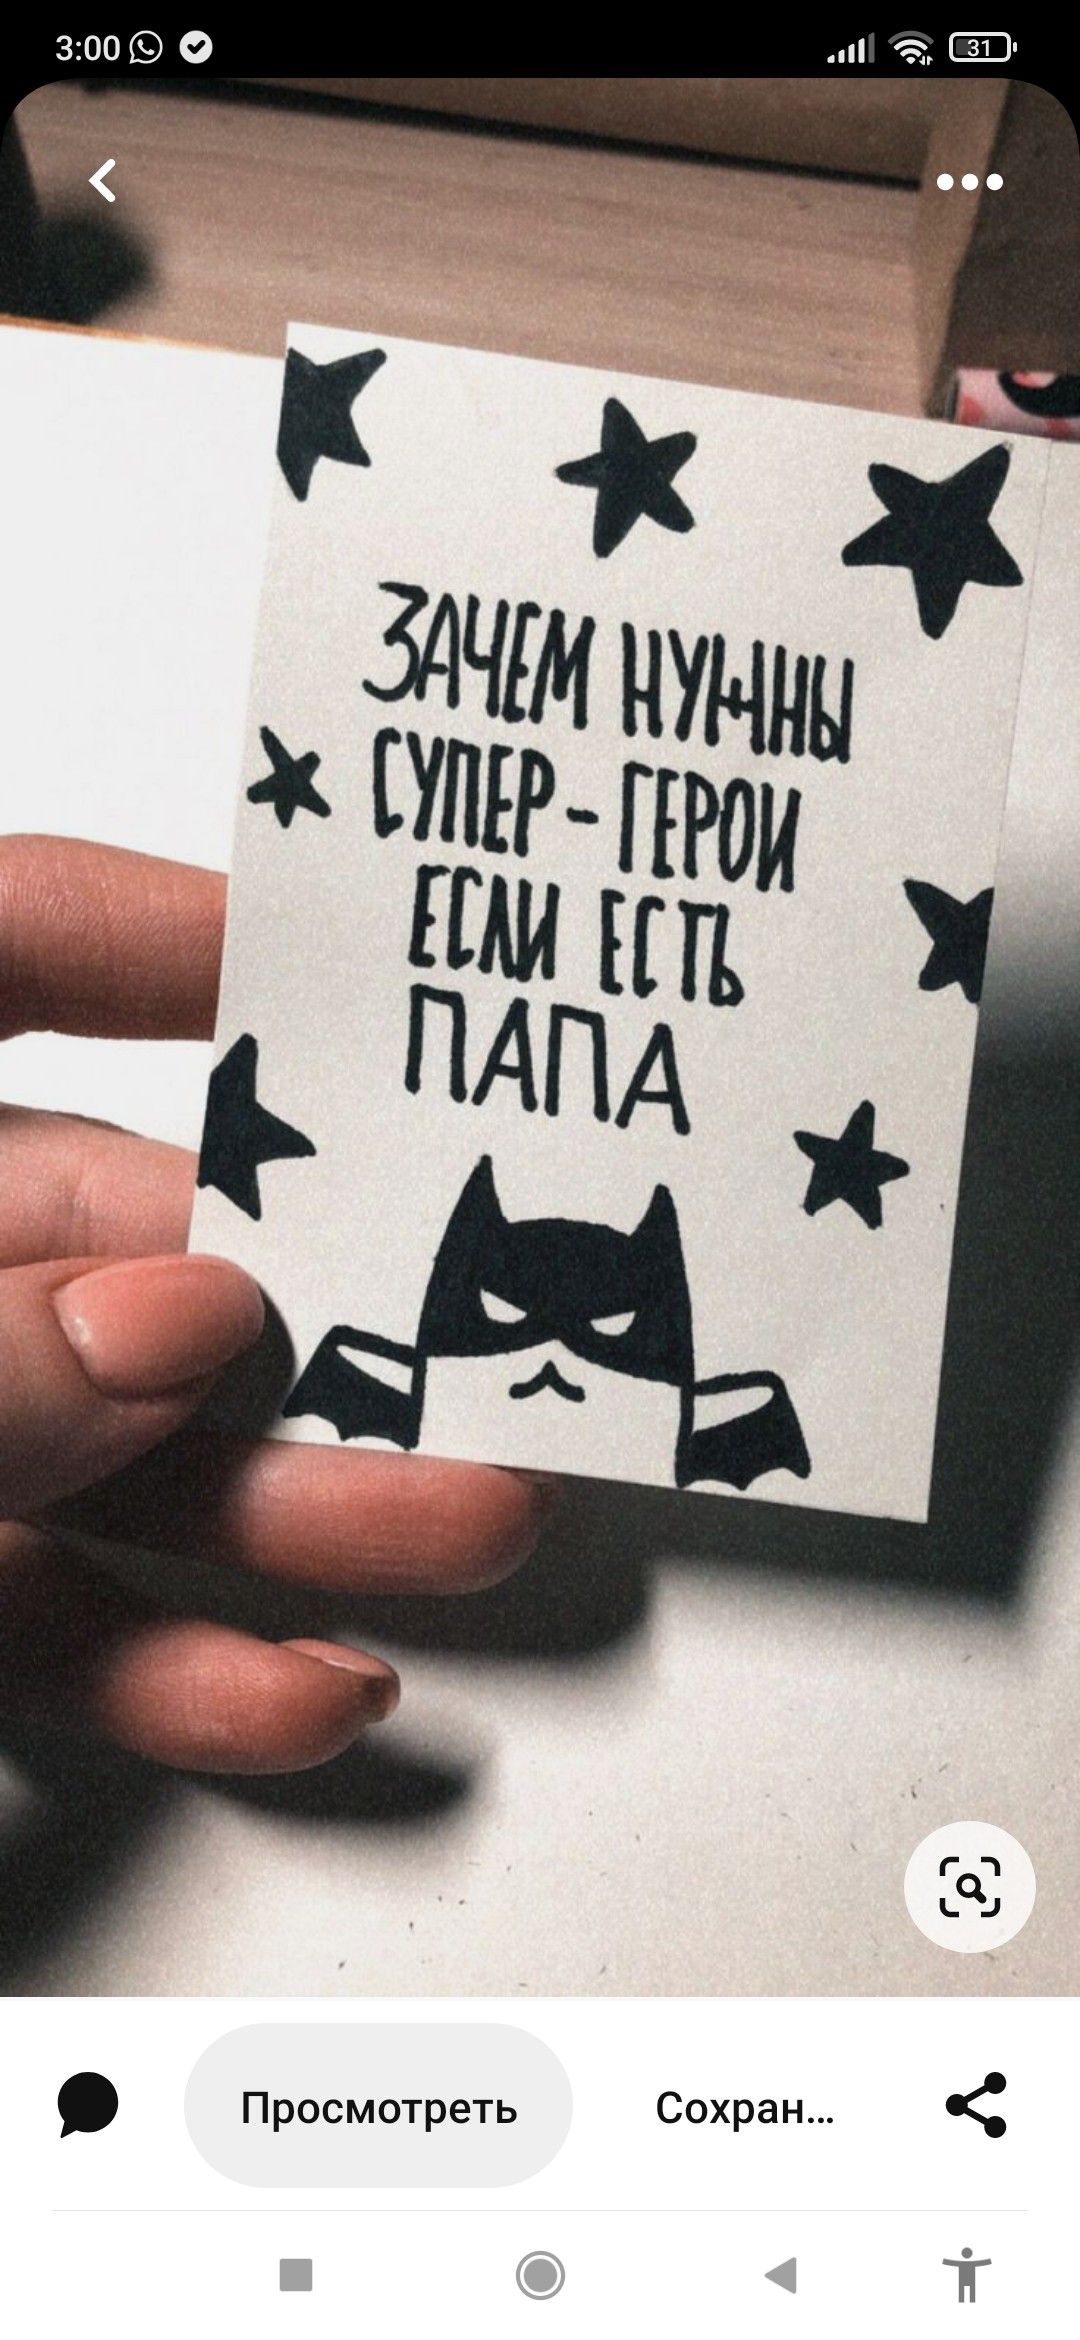 Рука держит открытку с написанным текстом Зачем нужны супер герои если есть папа и изображением Batman, украшенную звёздами.